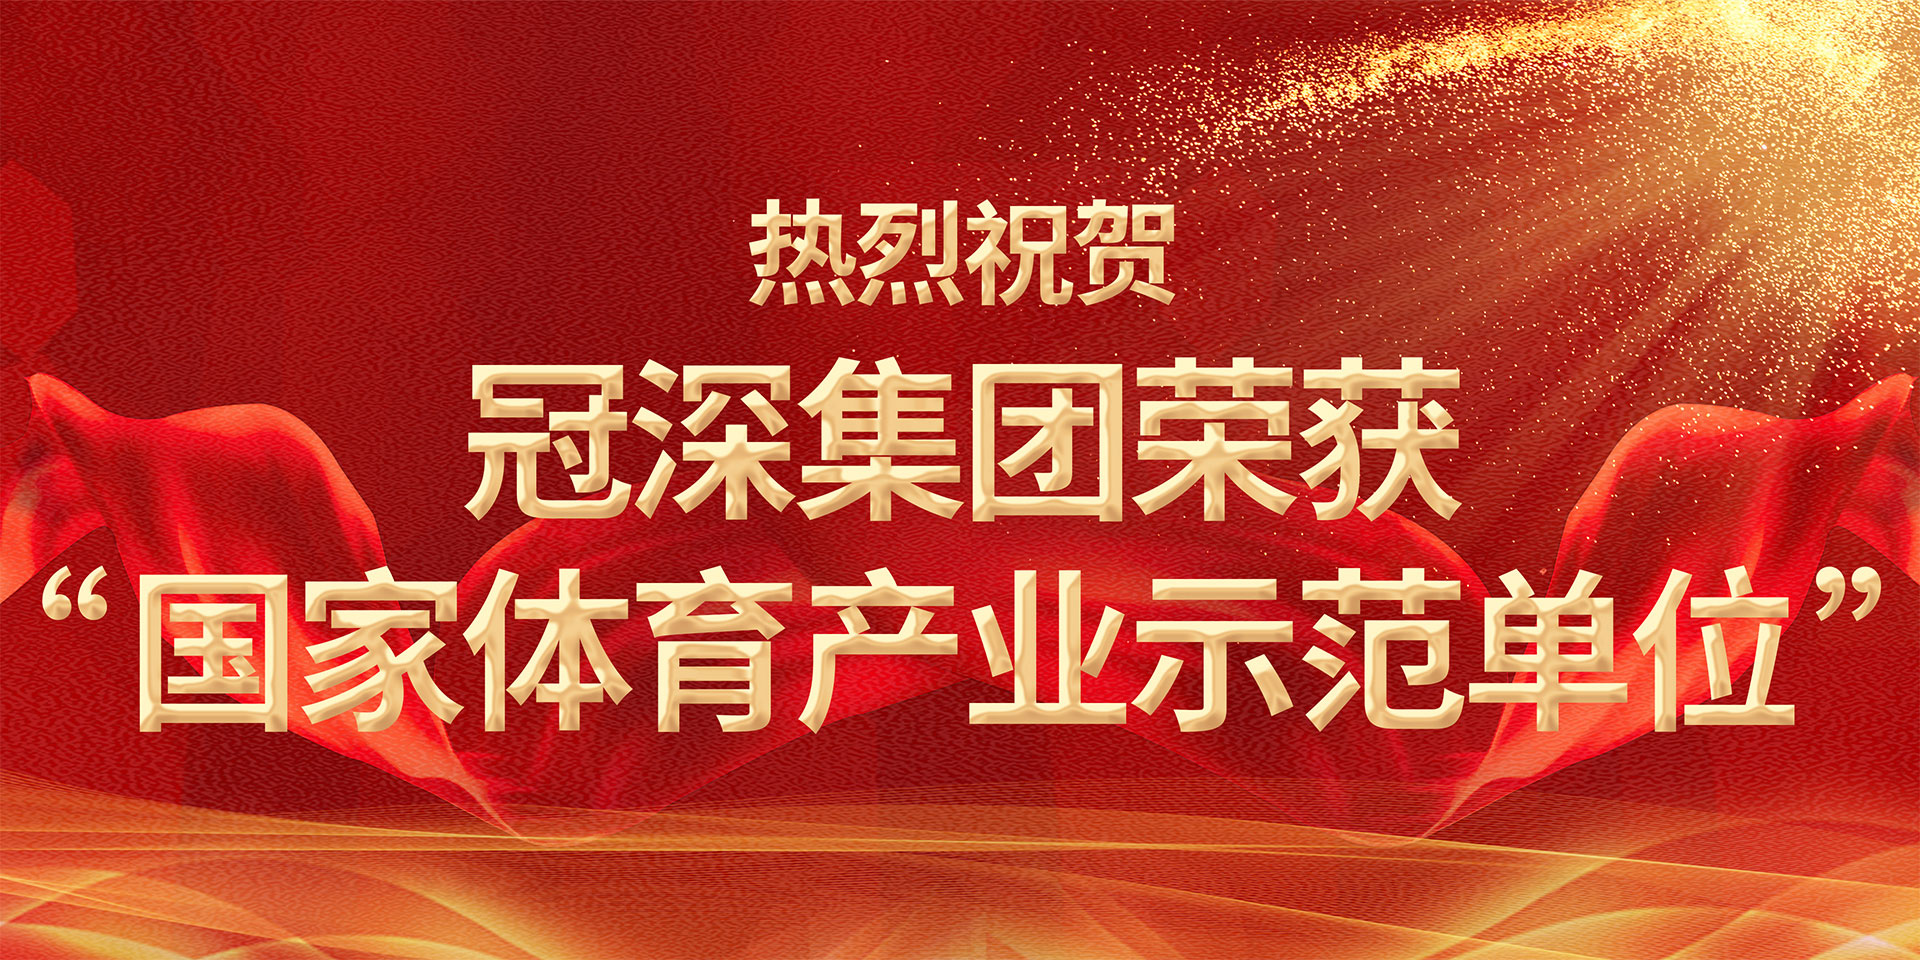 热烈祝贺非凡体育(中国)官方网站集团荣获“国家体育产业示范单位”